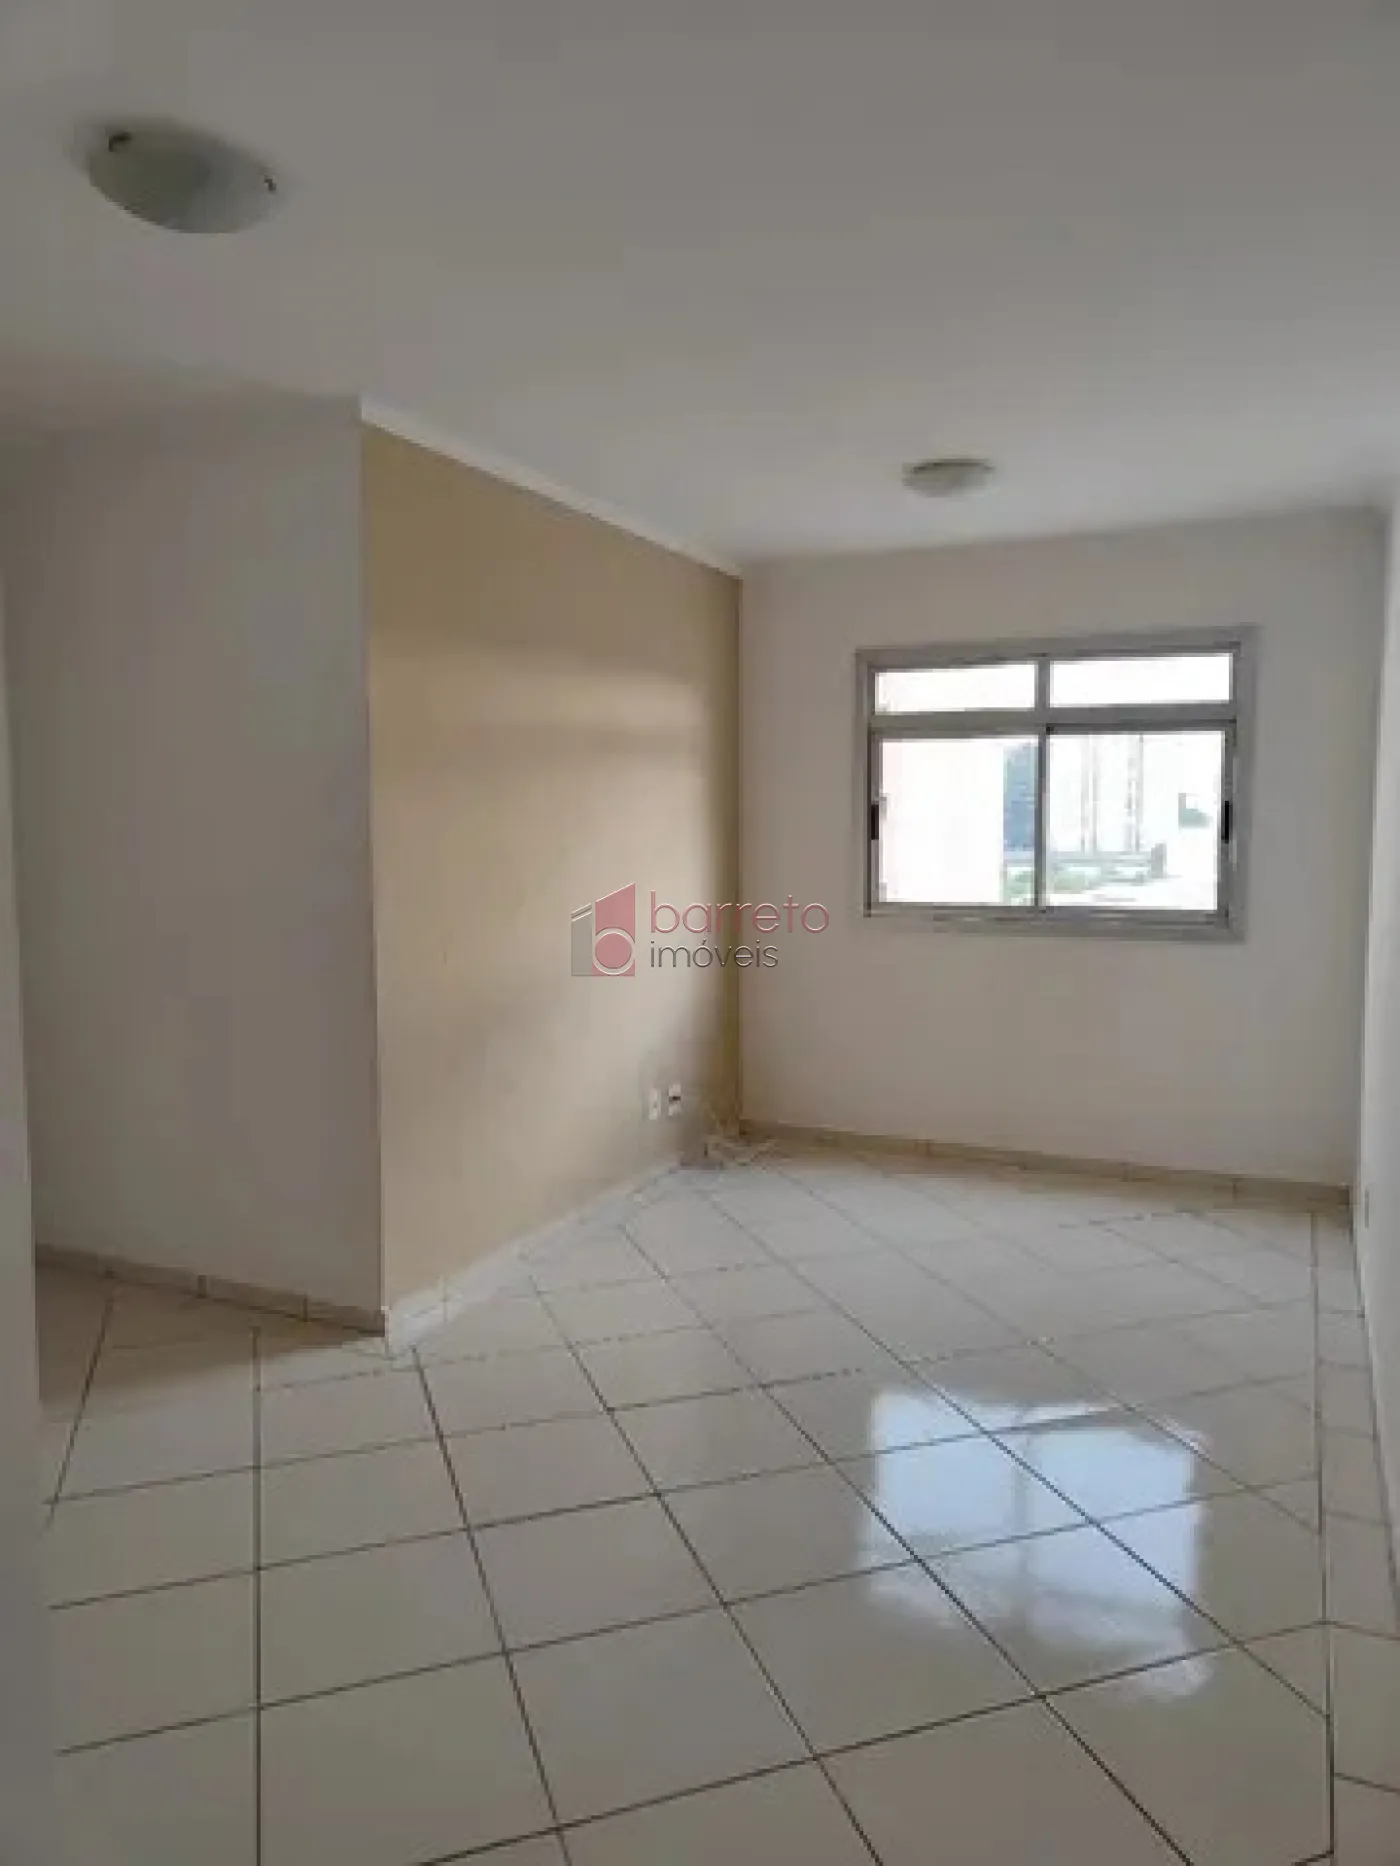 Comprar Apartamento / Padrão em Jundiaí R$ 375.000,00 - Foto 1